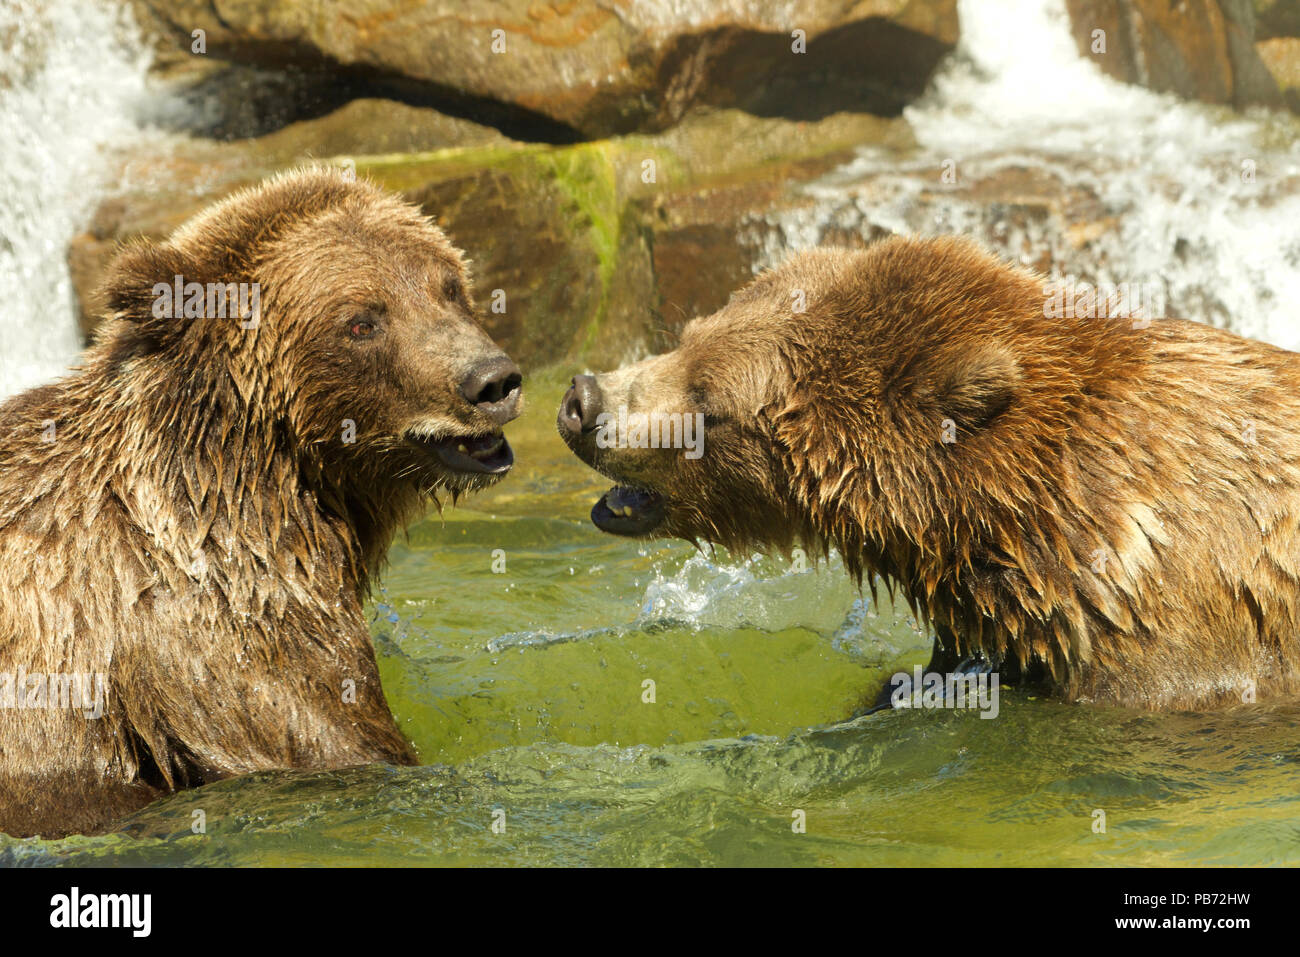 Deux grizzlis de l'adolescent, ou d'Amérique du Nord l'ours brun, jouer les combats dans un étang de l'eau, l'eau tombant sur les rochers en arrière-plan. Banque D'Images